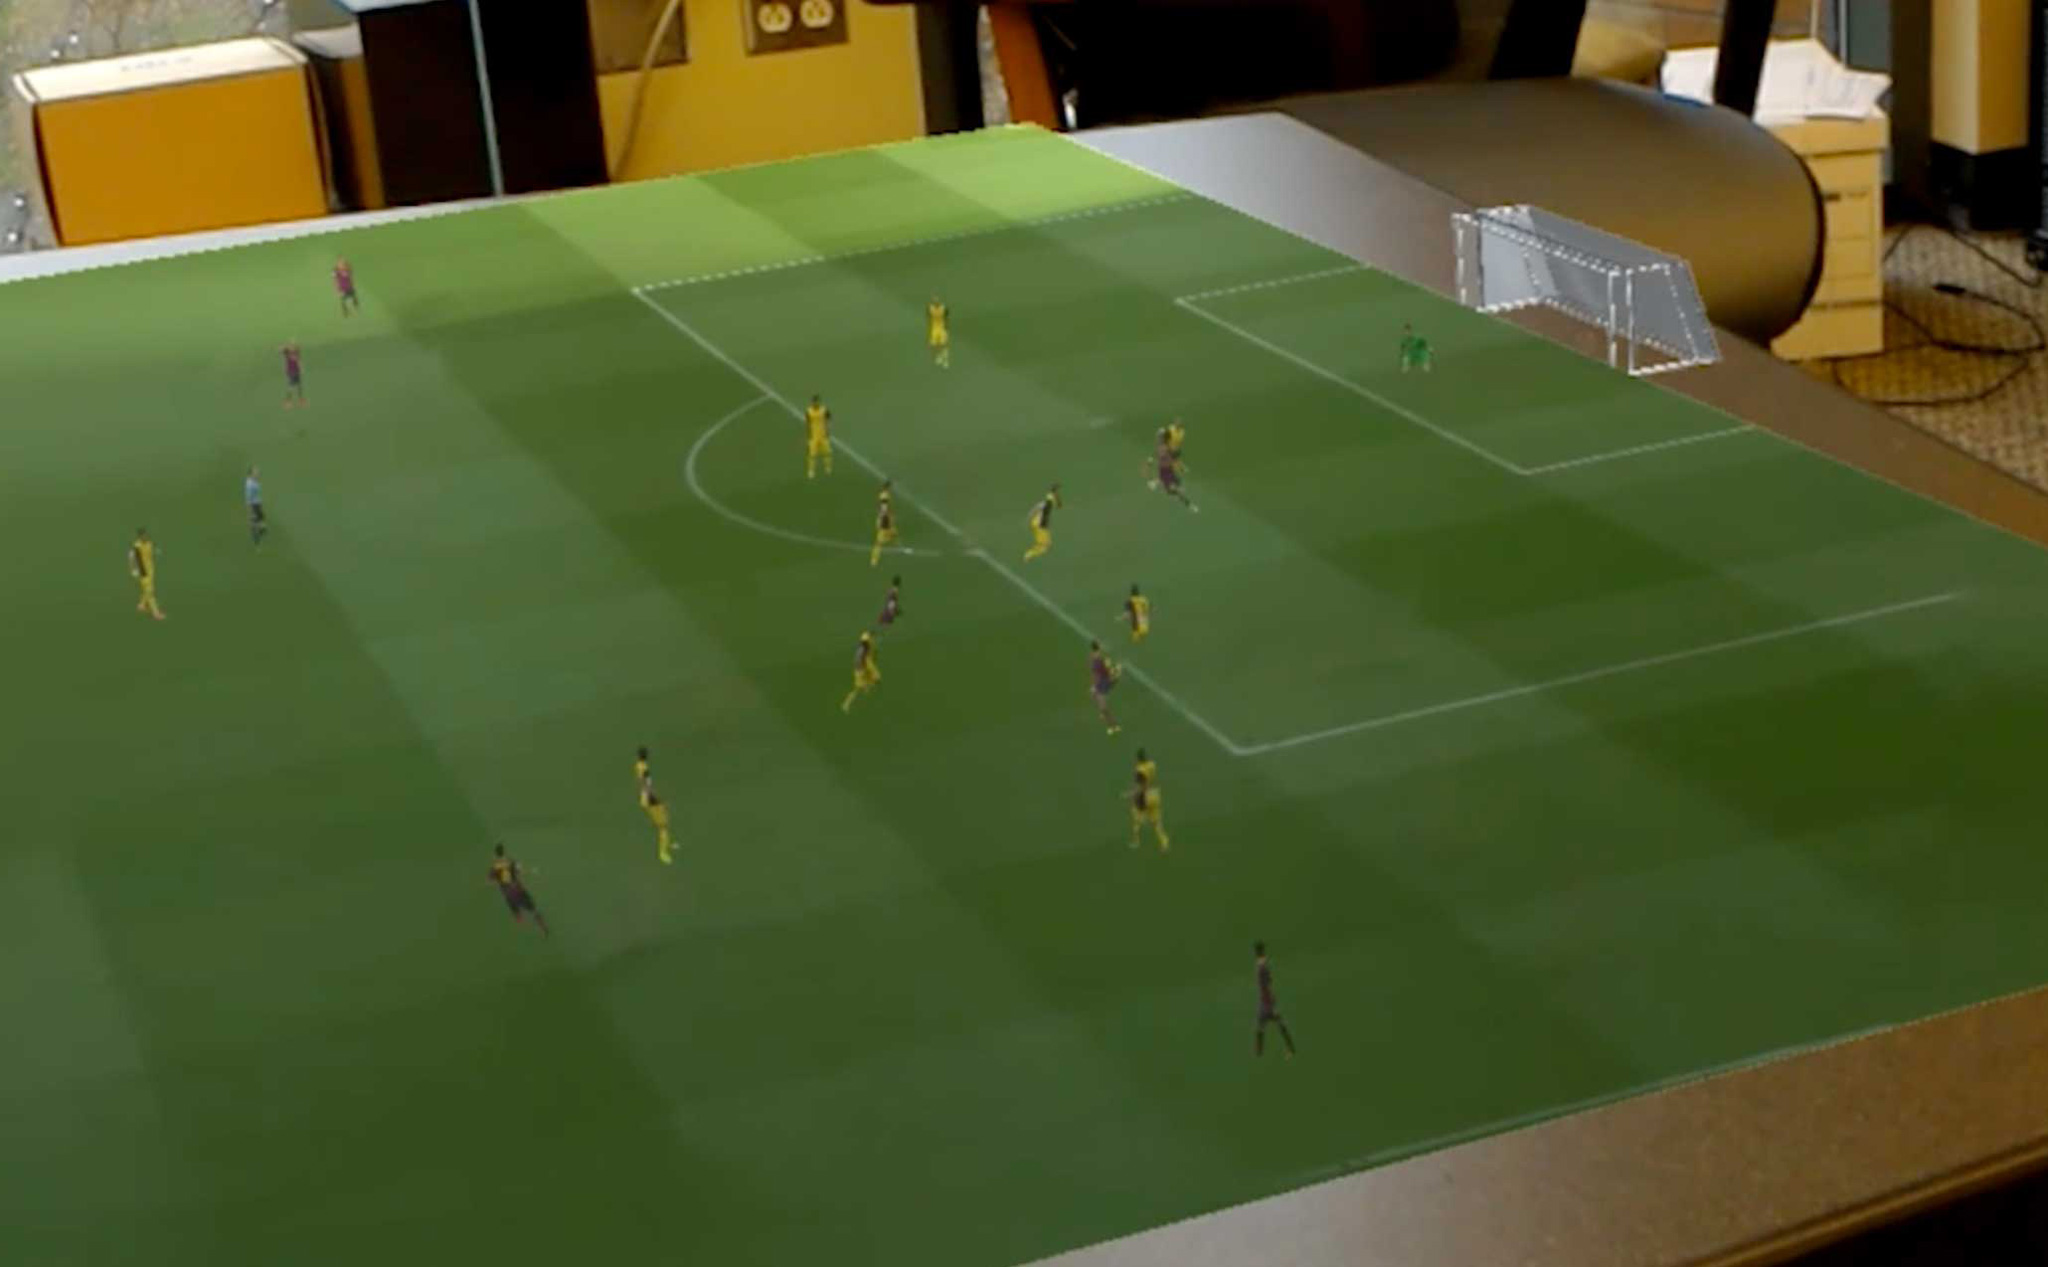 Xem bóng đá qua sân vận động ảo ngay trong nhà bằng công nghệ AR